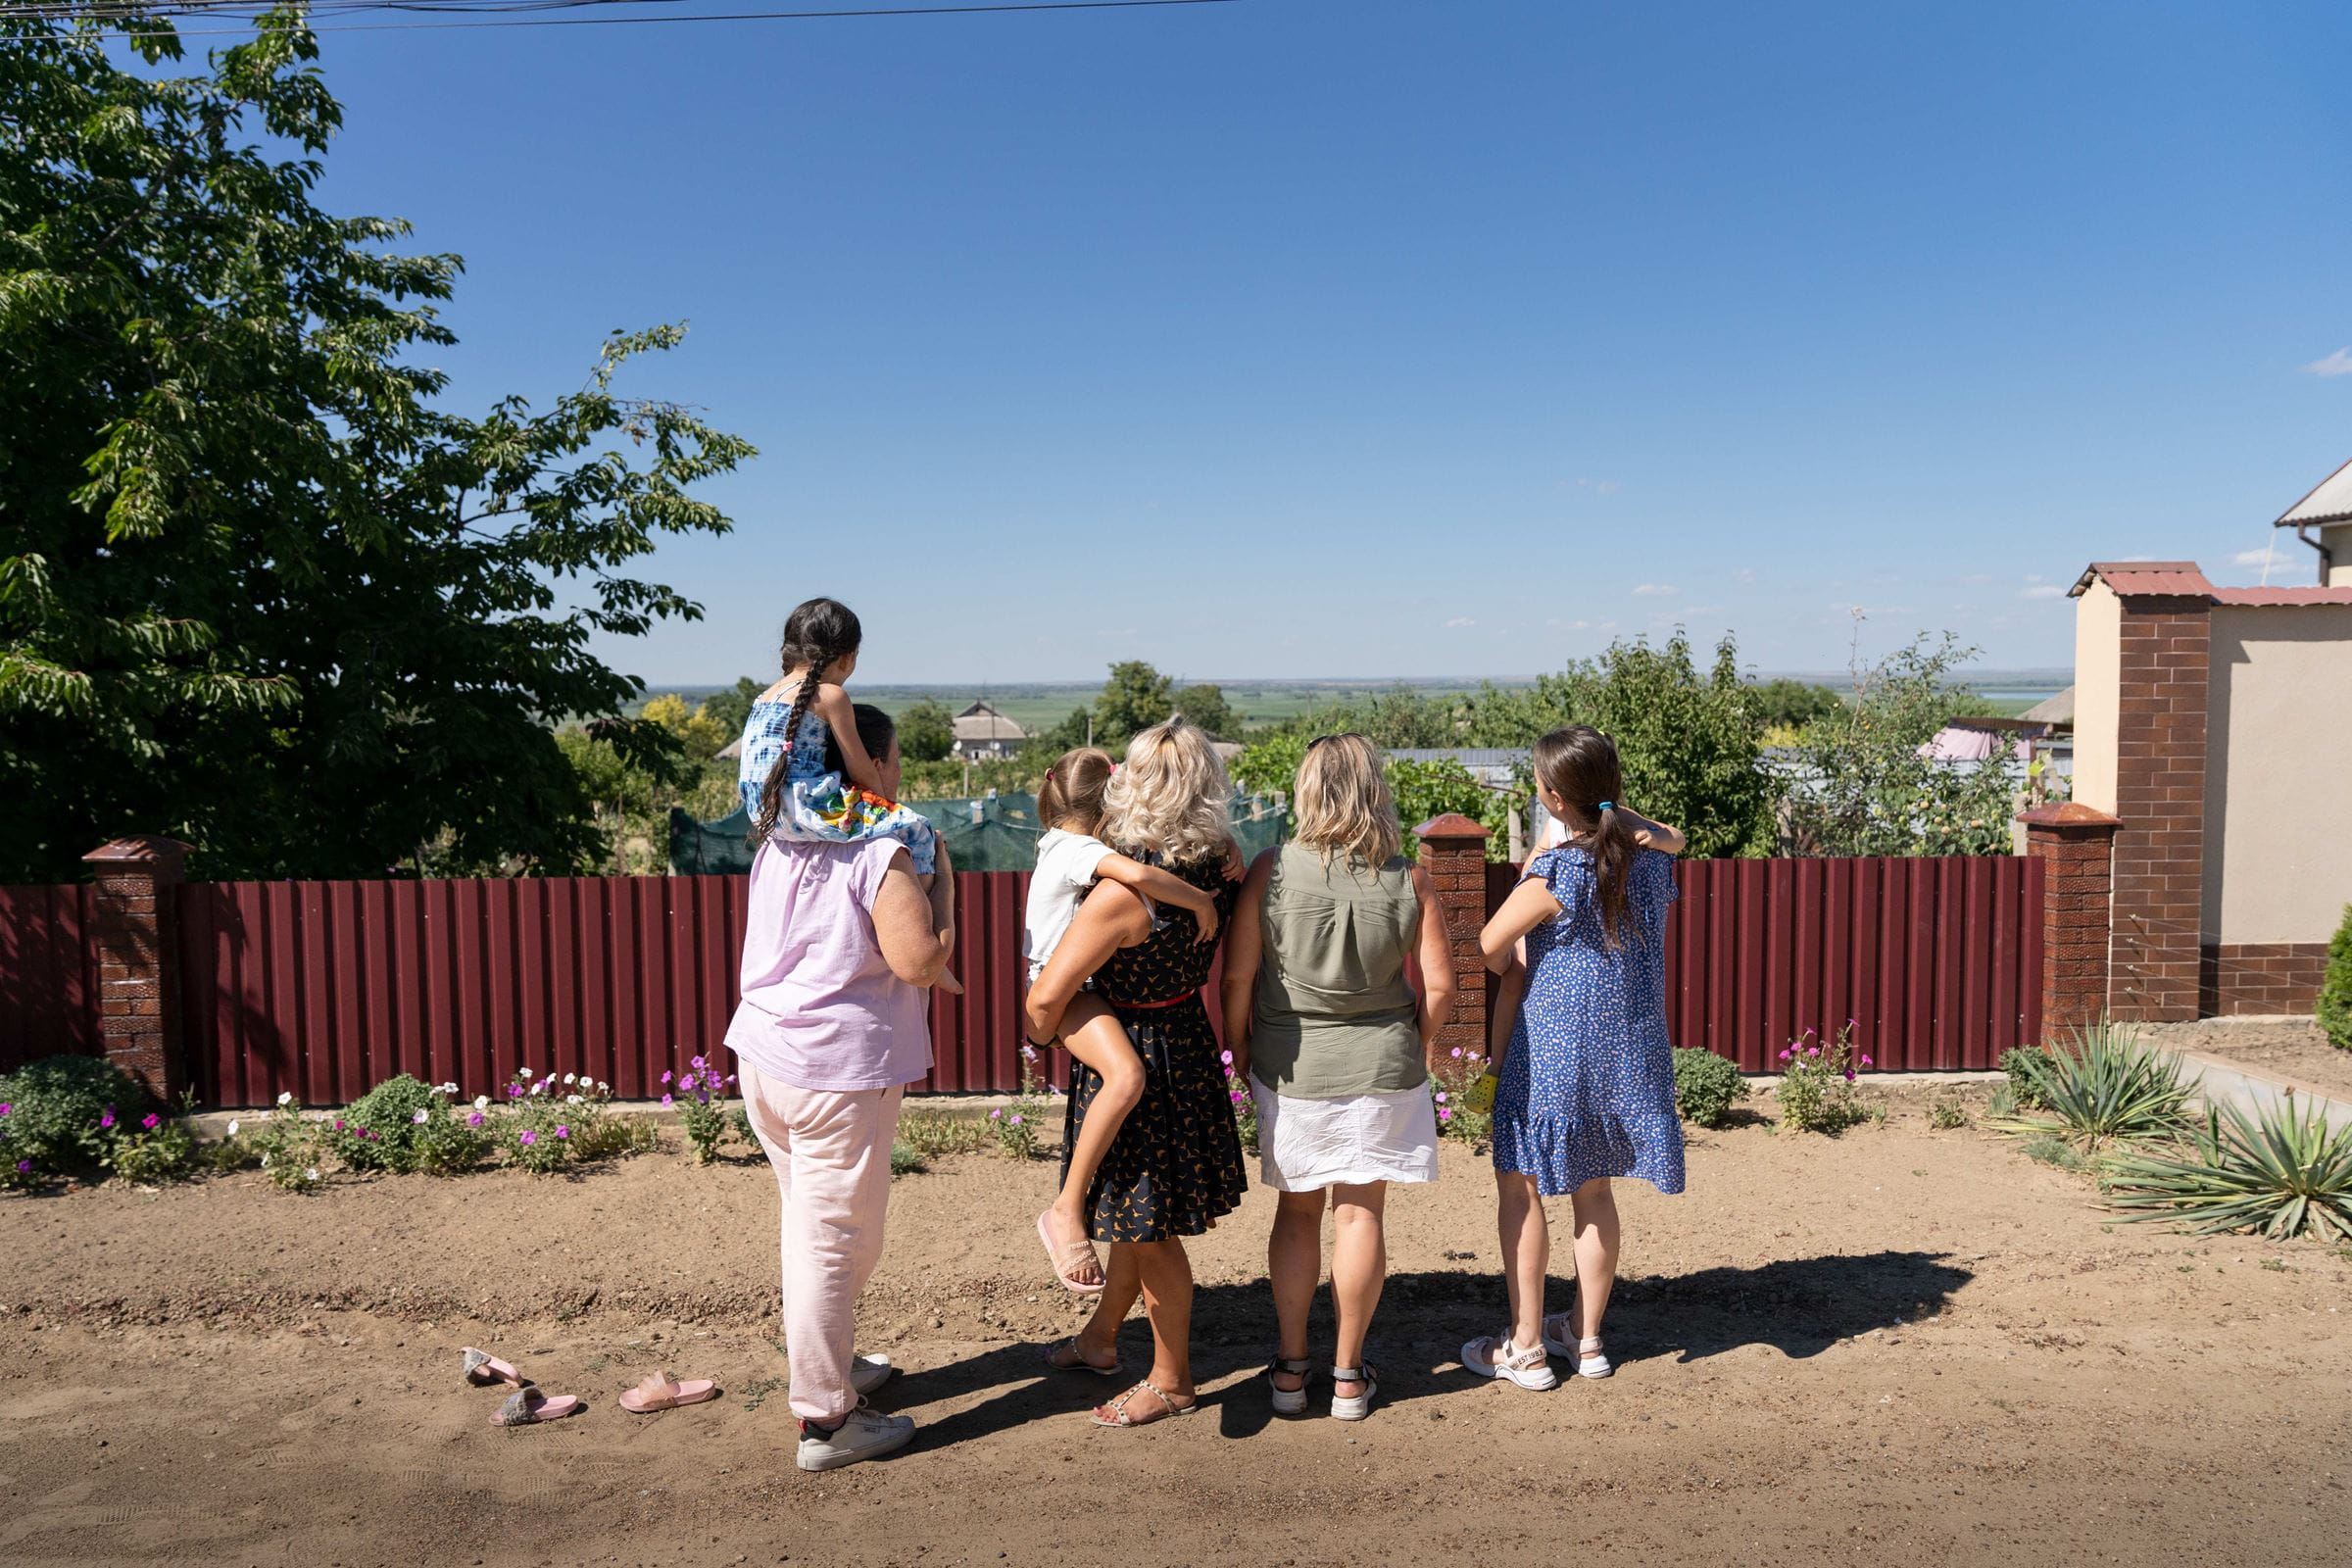 Blick über den Zaun in die Heimat: Hinter den Bäumen beginnt die Ukraine
Moldau/Tudora: Projekt von CONCORDIA Sozialprojekte